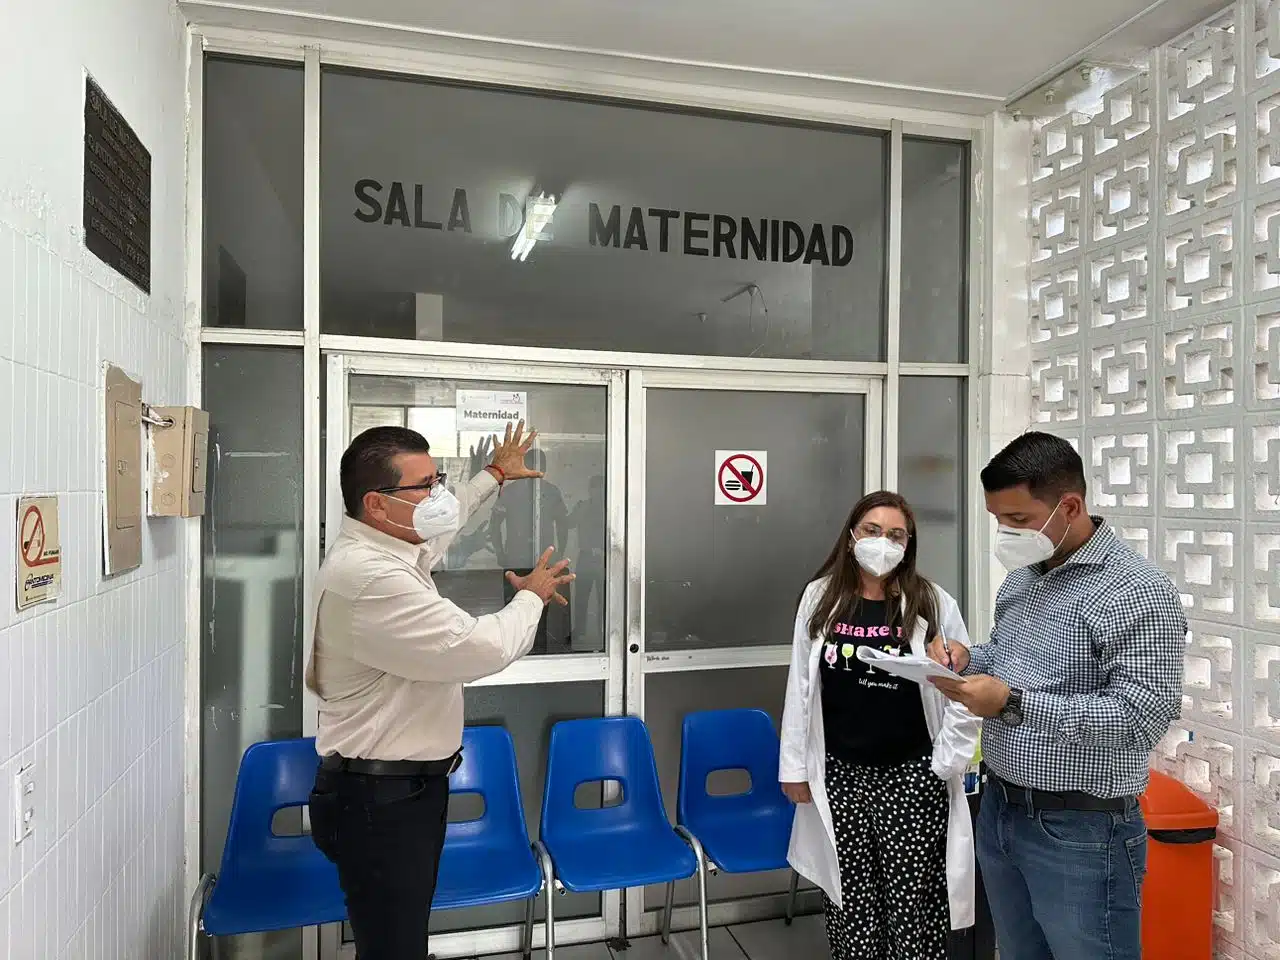 El alcalde Édgar González Zatarain visitó las instalaciones en compañía de la directora del hospitalito, Claudia Pérez Ramírez